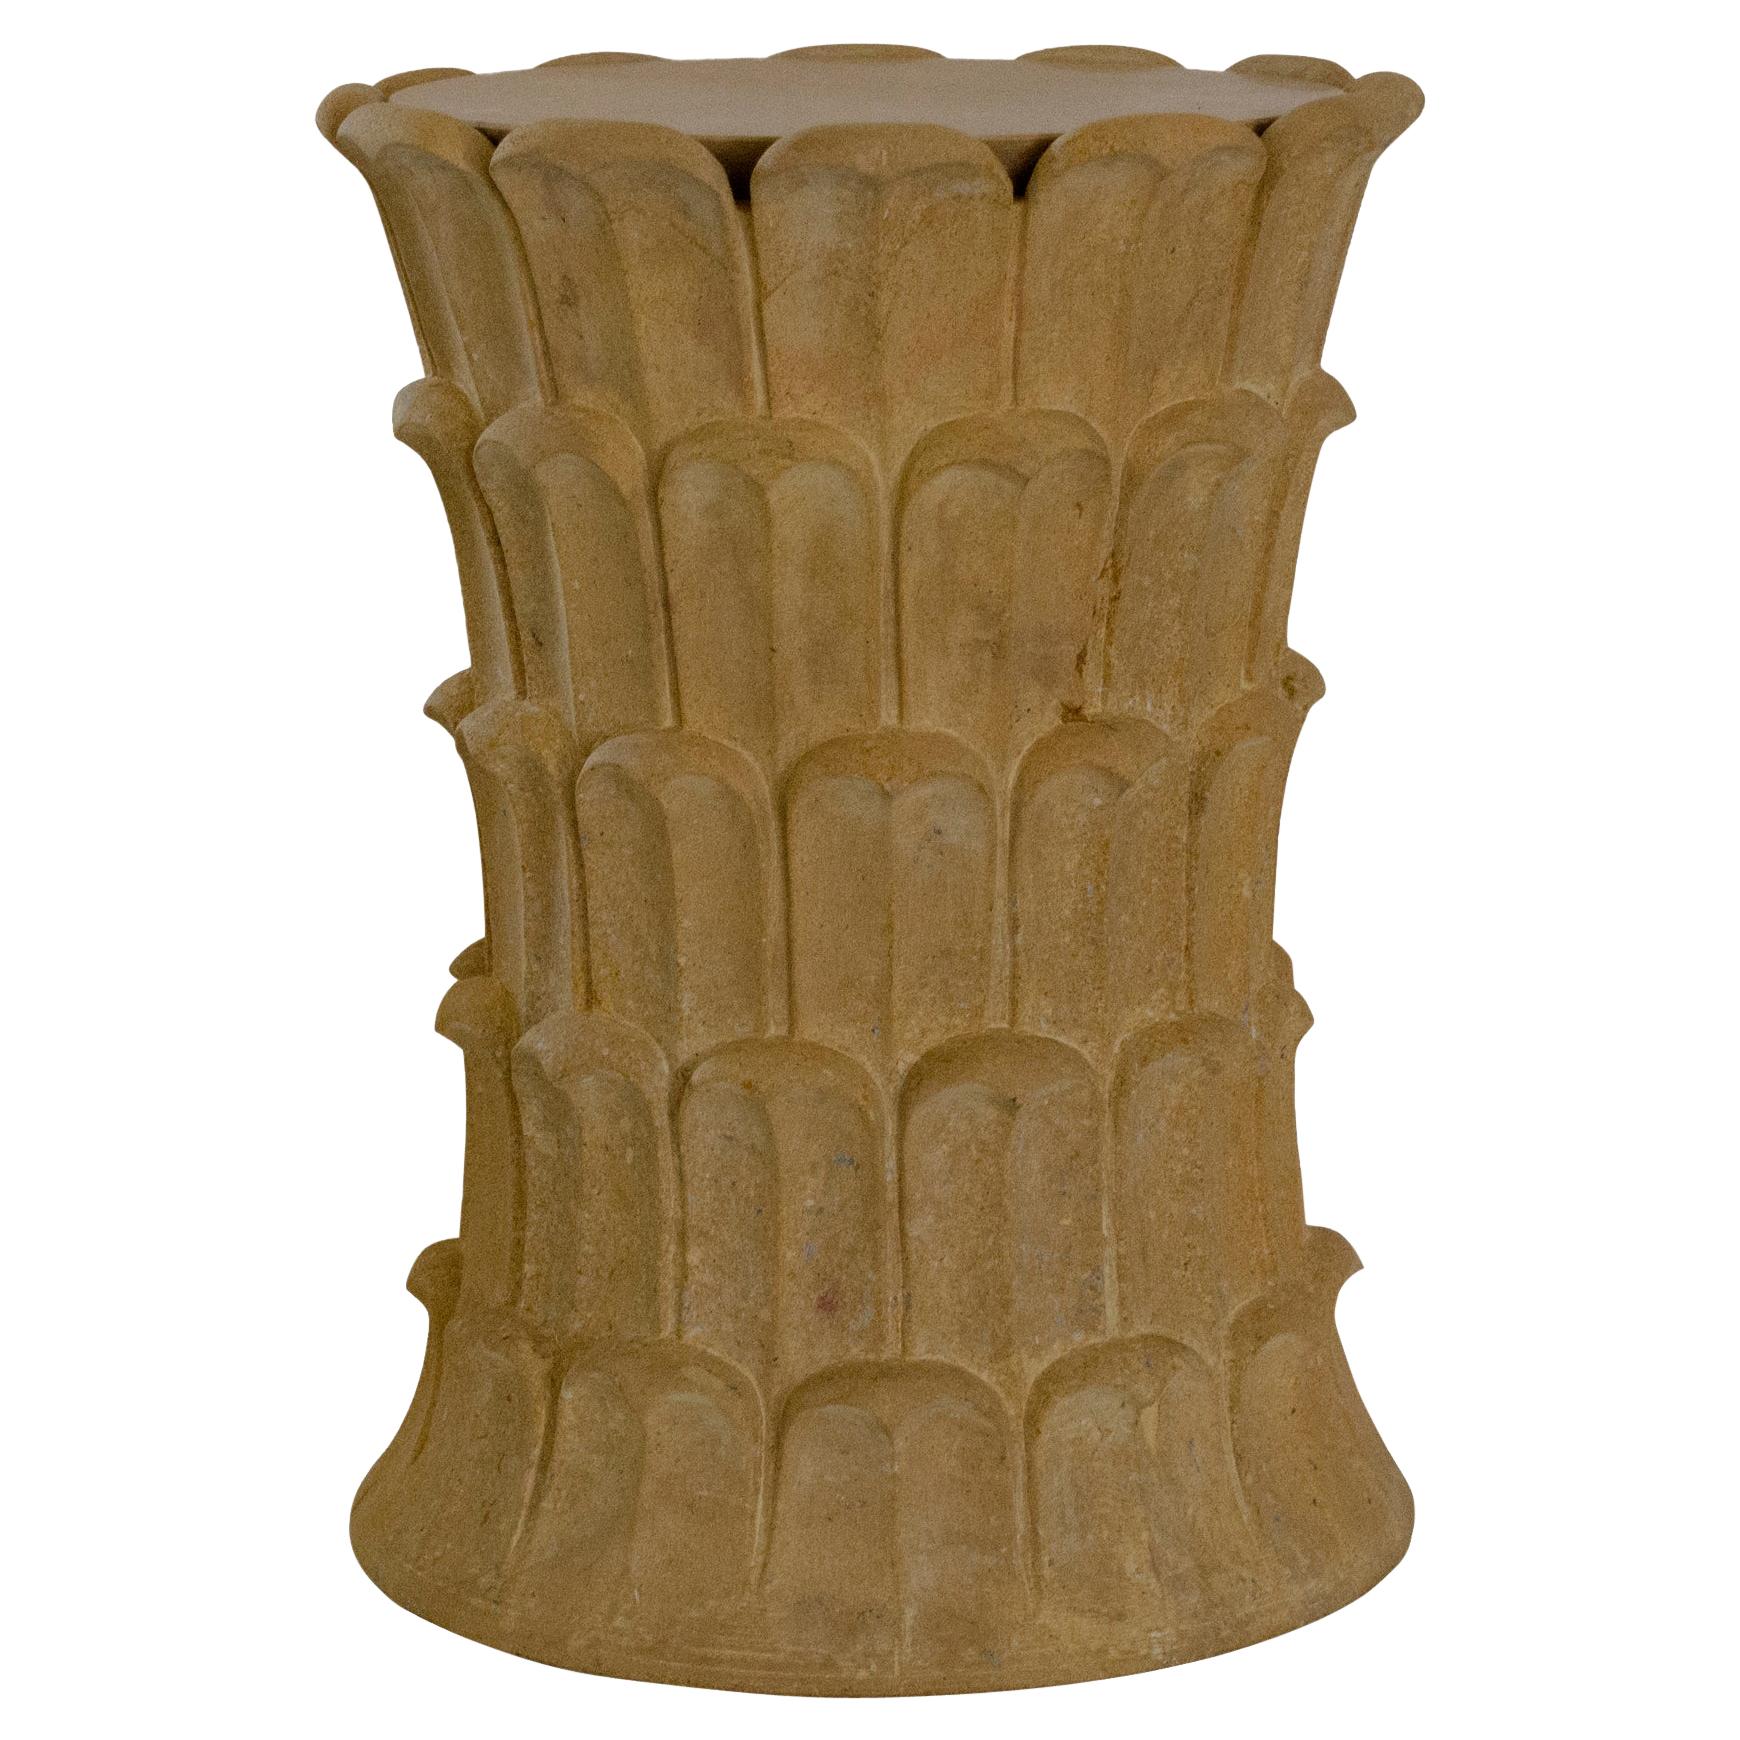 Palmen-Beistelltisch aus Jaisalmer-Stein, handgefertigt in Indien, datiert